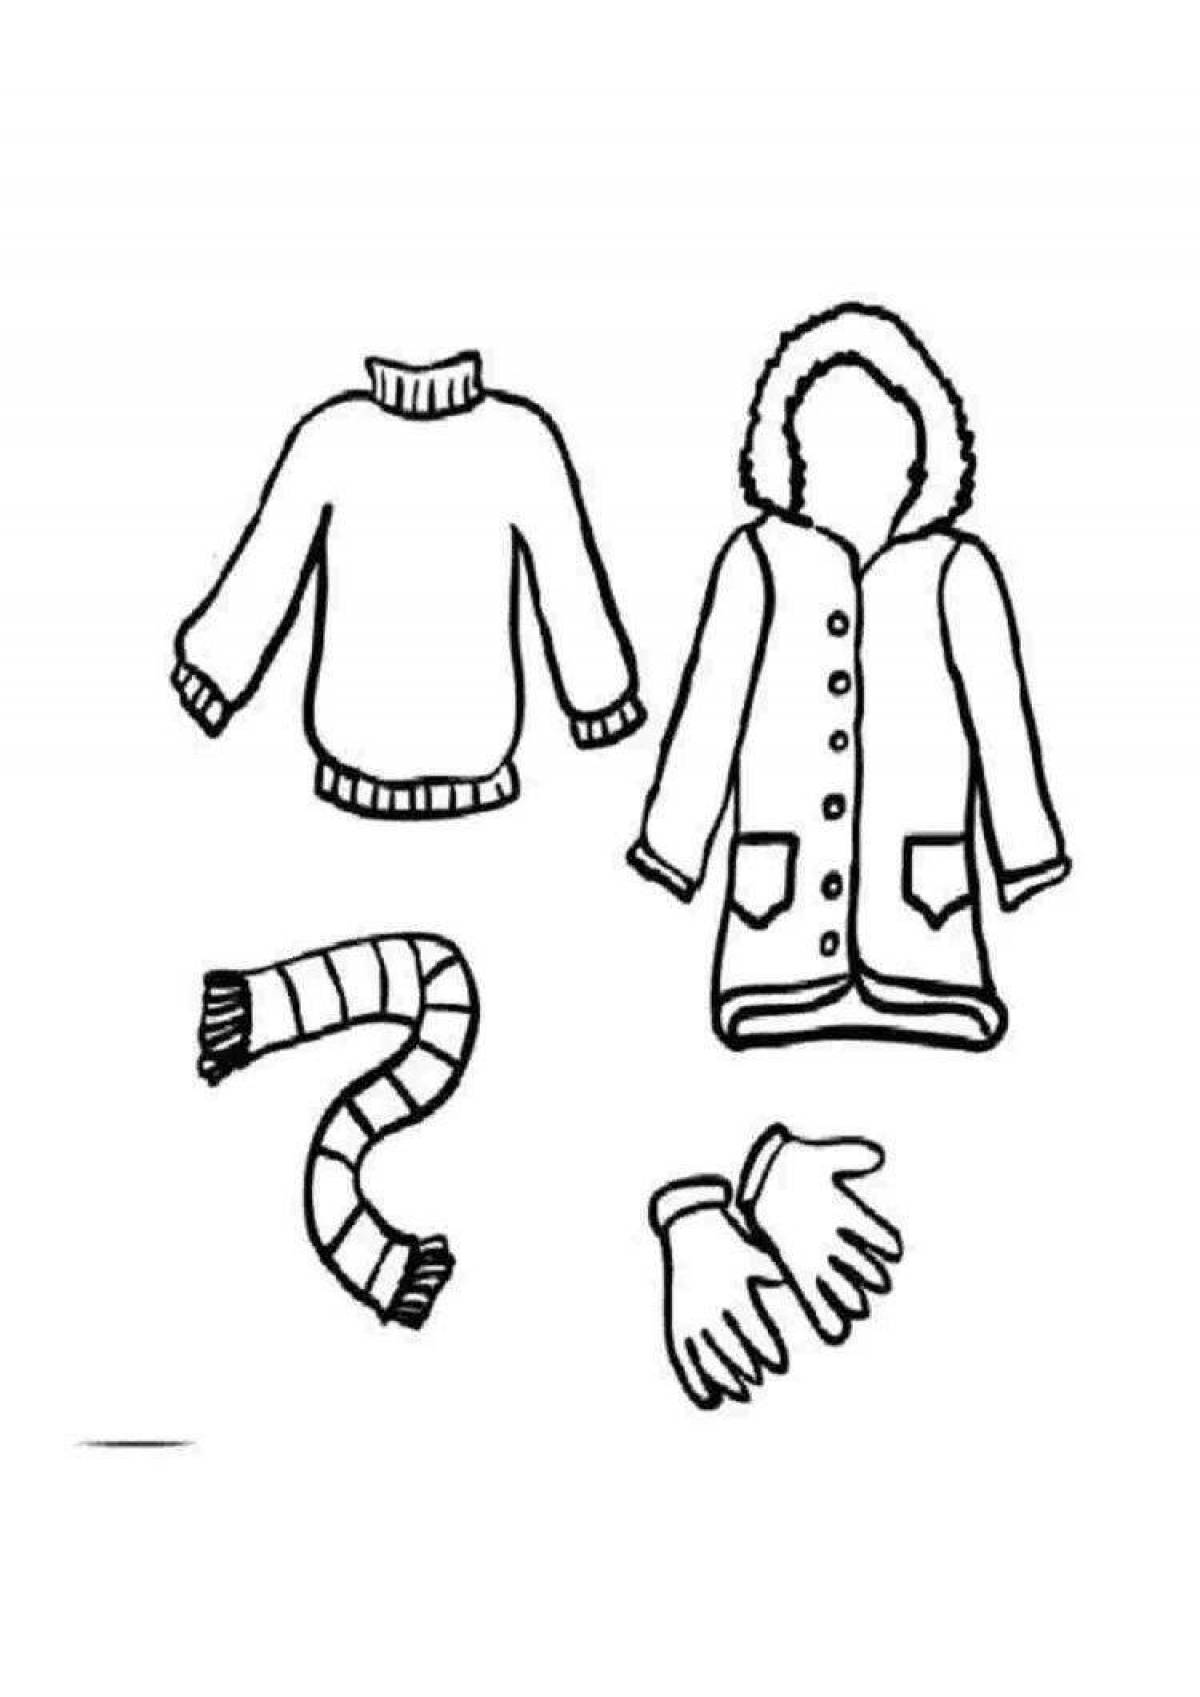 Увлекательная раскраска зимней одежды для детей 6-7 лет